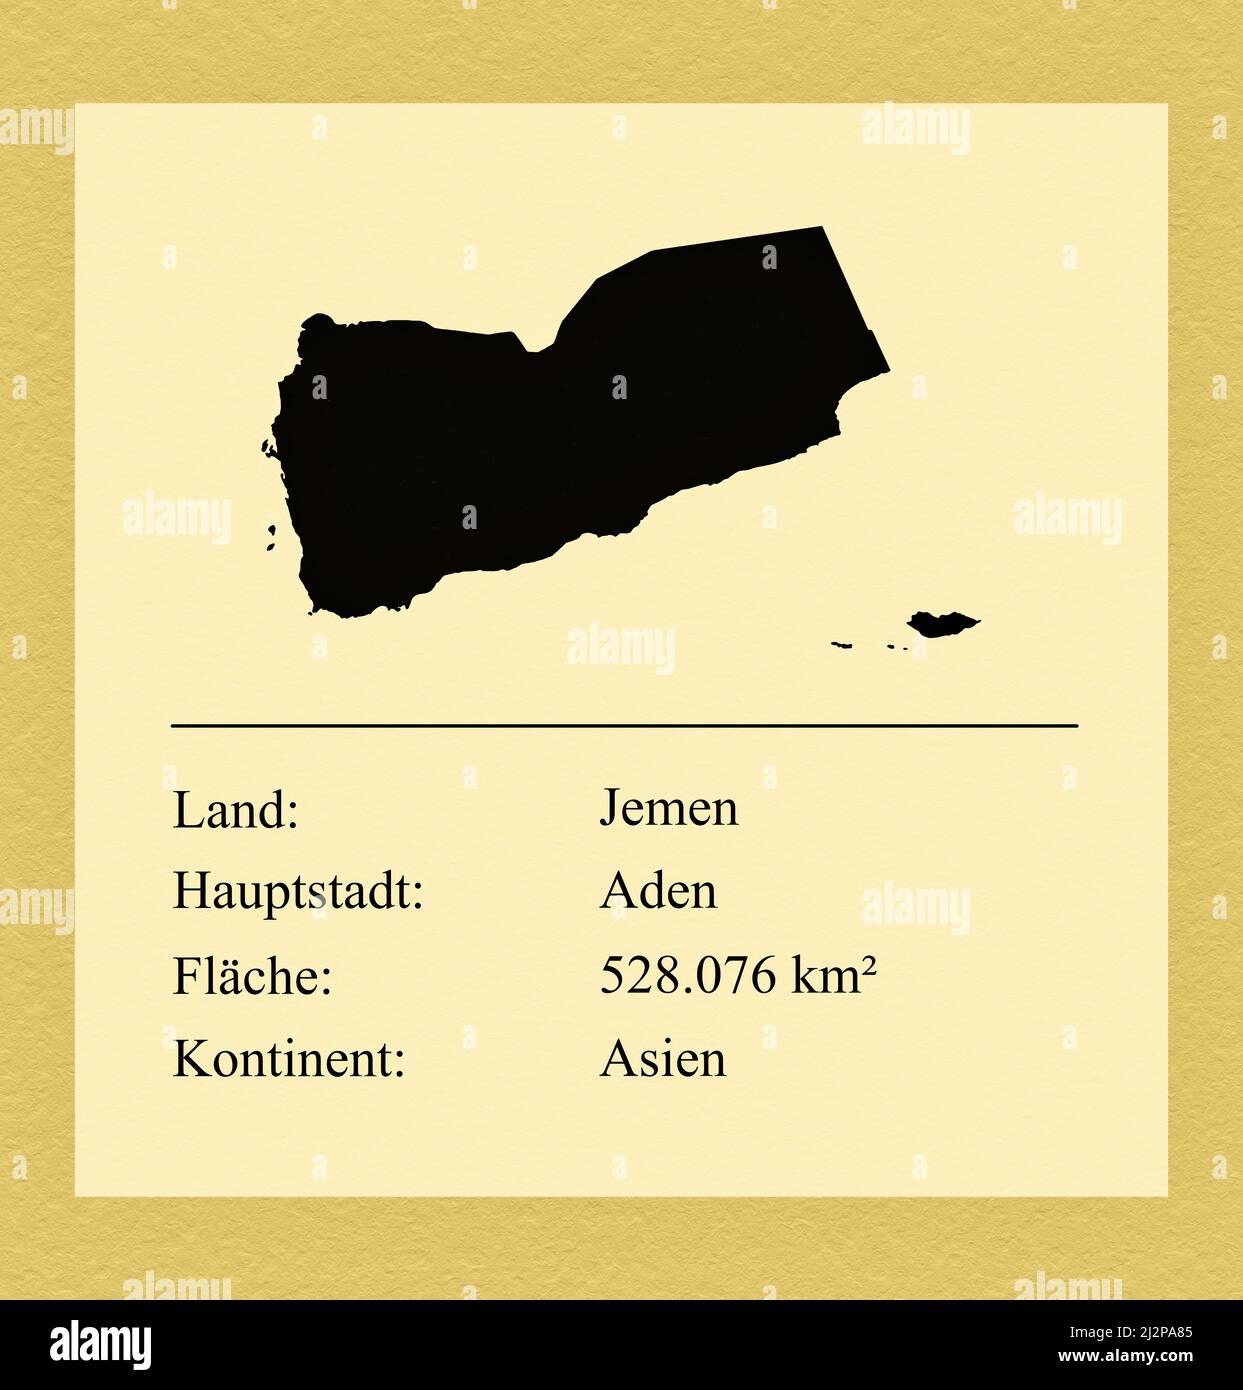 Umrisse des Landes Jemen, darunter ein kleiner Steckbrief mit Ländernamen, Hauptstadt, Fläche und Kontinent Stock Photo